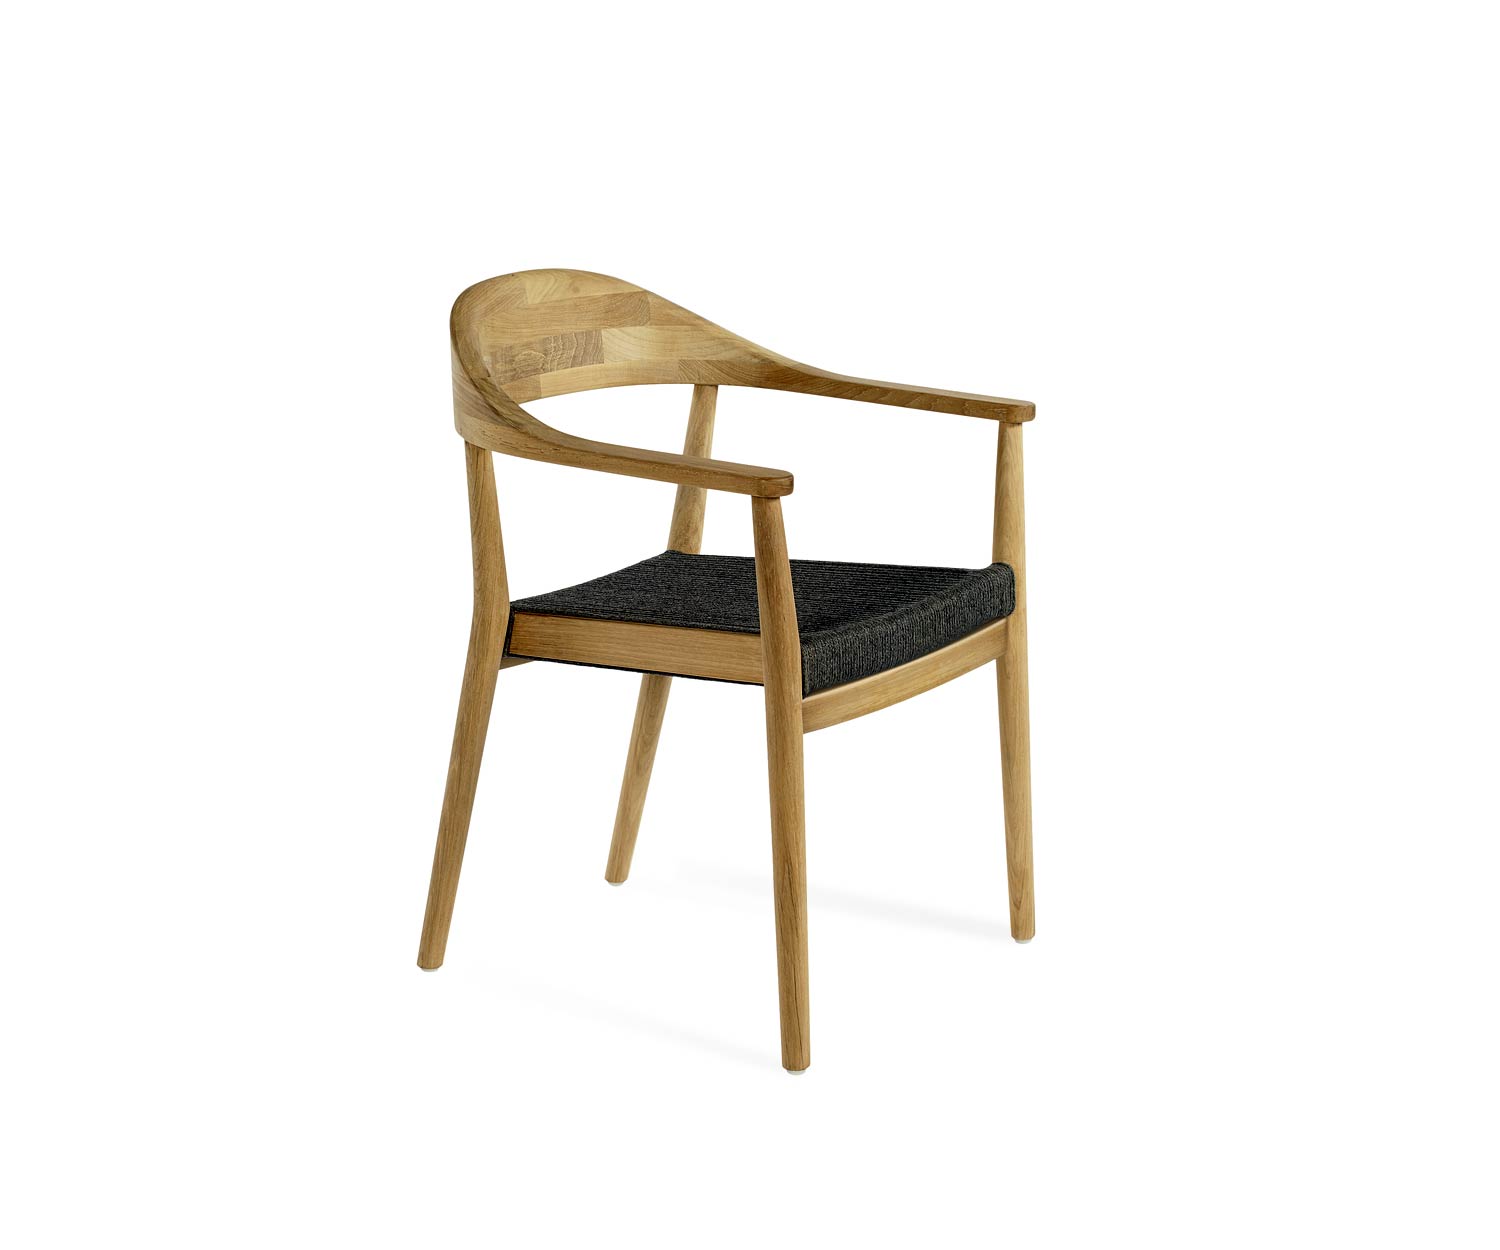 Exclusieve Oasiq design teakhouten fauteuil met geweven zitting